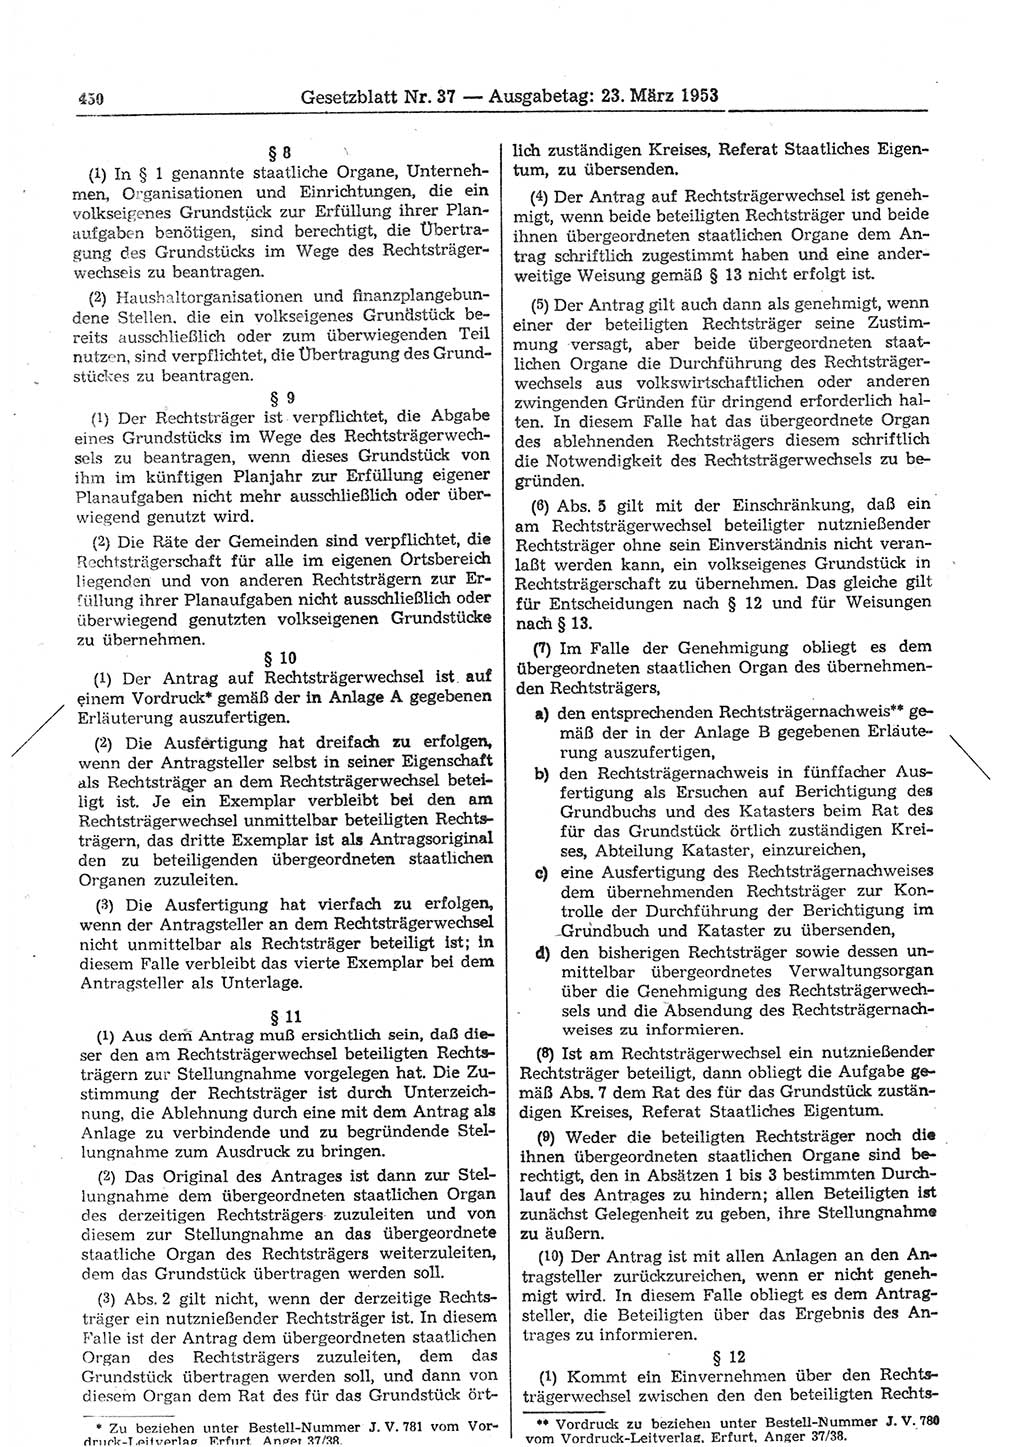 Gesetzblatt (GBl.) der Deutschen Demokratischen Republik (DDR) 1953, Seite 450 (GBl. DDR 1953, S. 450)